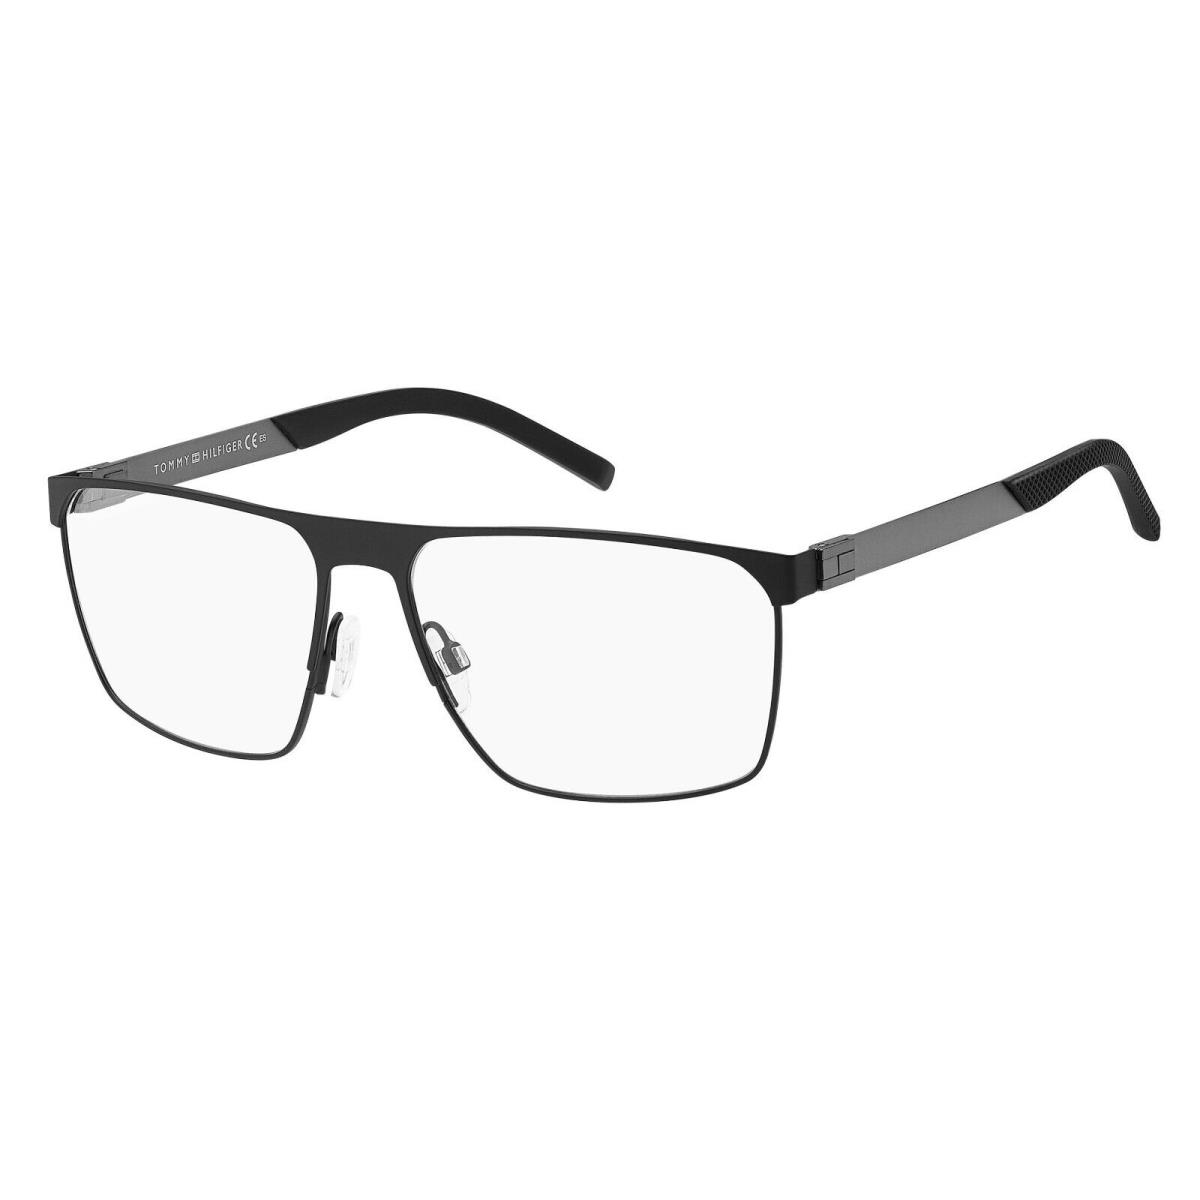 Tommy Hilfiger Men`s Eyeglasses TH 1861 003 61 mm Black Grey Ophthalmic Frame